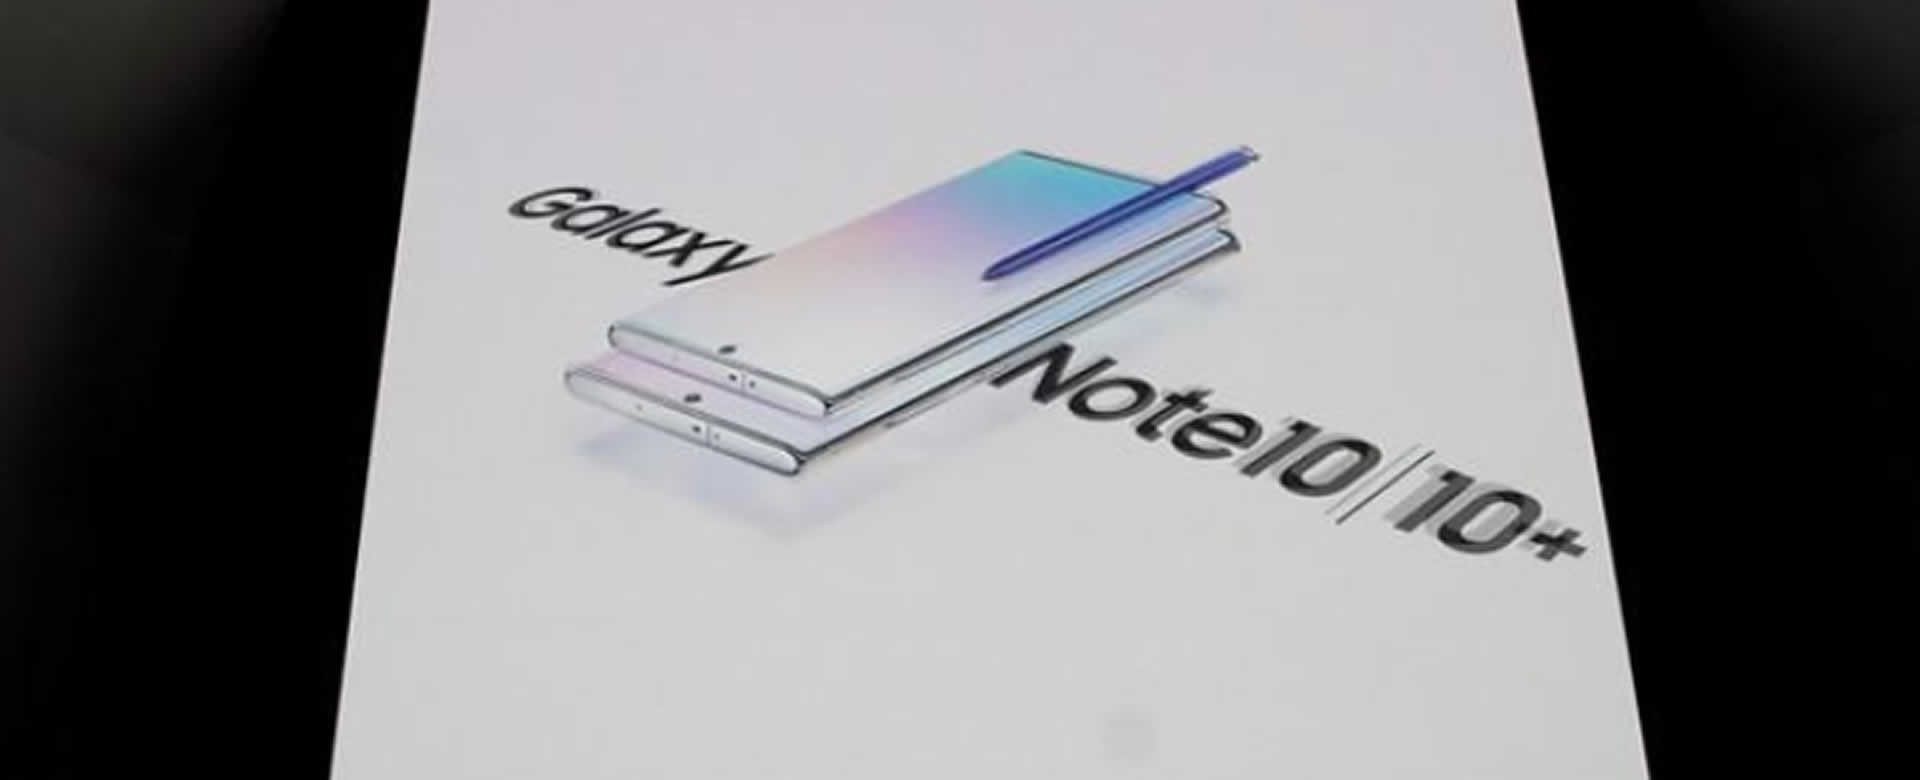 Samsung presenta el Note 10 y apuesta a su nueva cámara